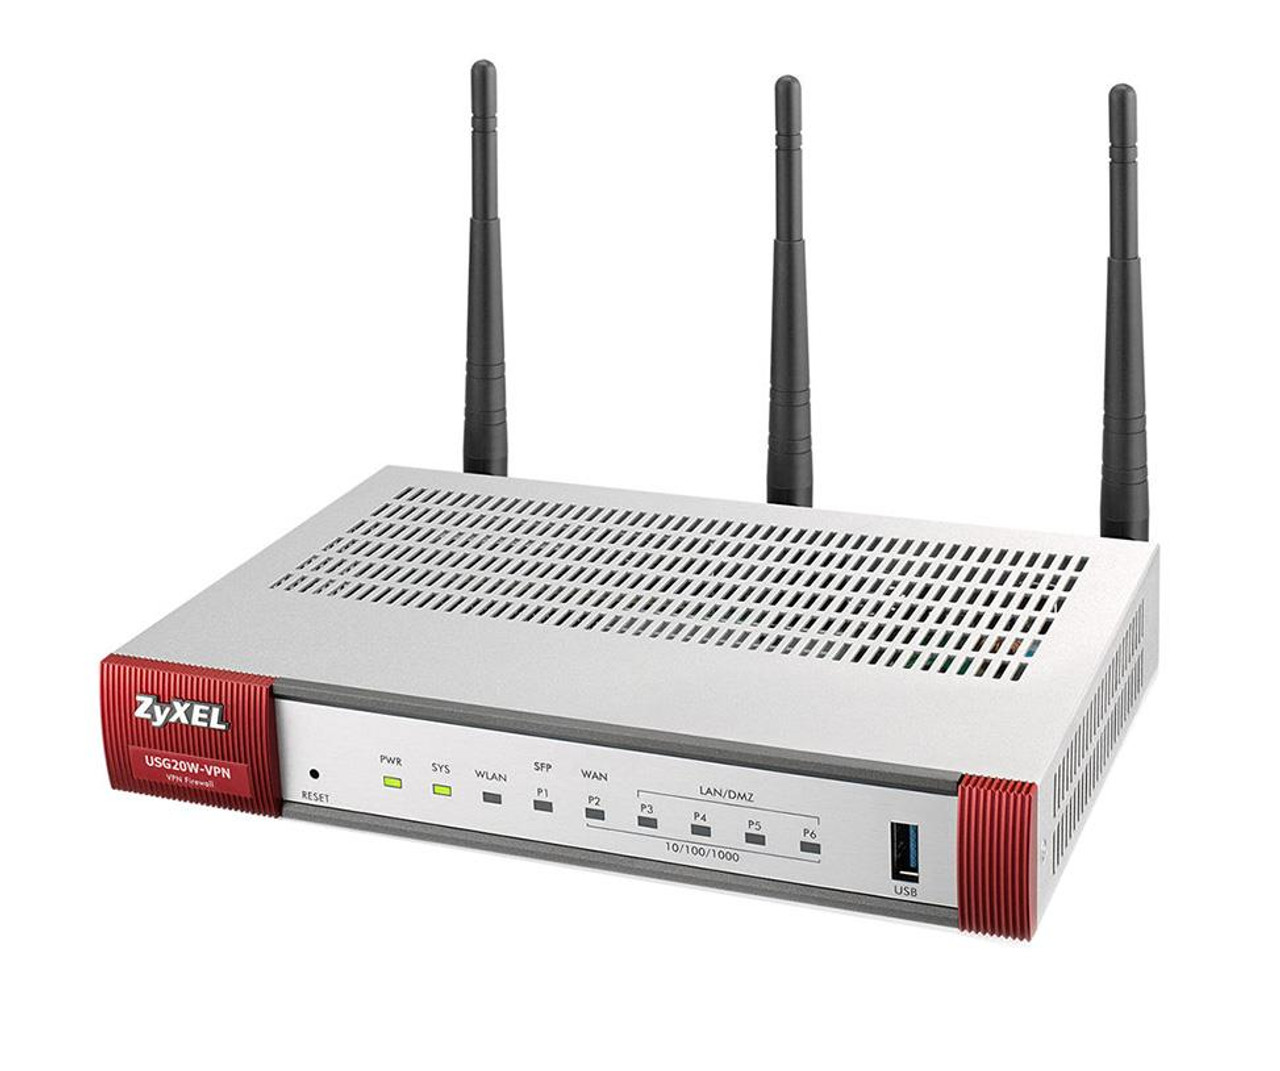 ZWUSG20W Zyxel ZyWALL USG 20W Wireless Unified Security Gateway 5 Port IEEE 802.11n (draft)